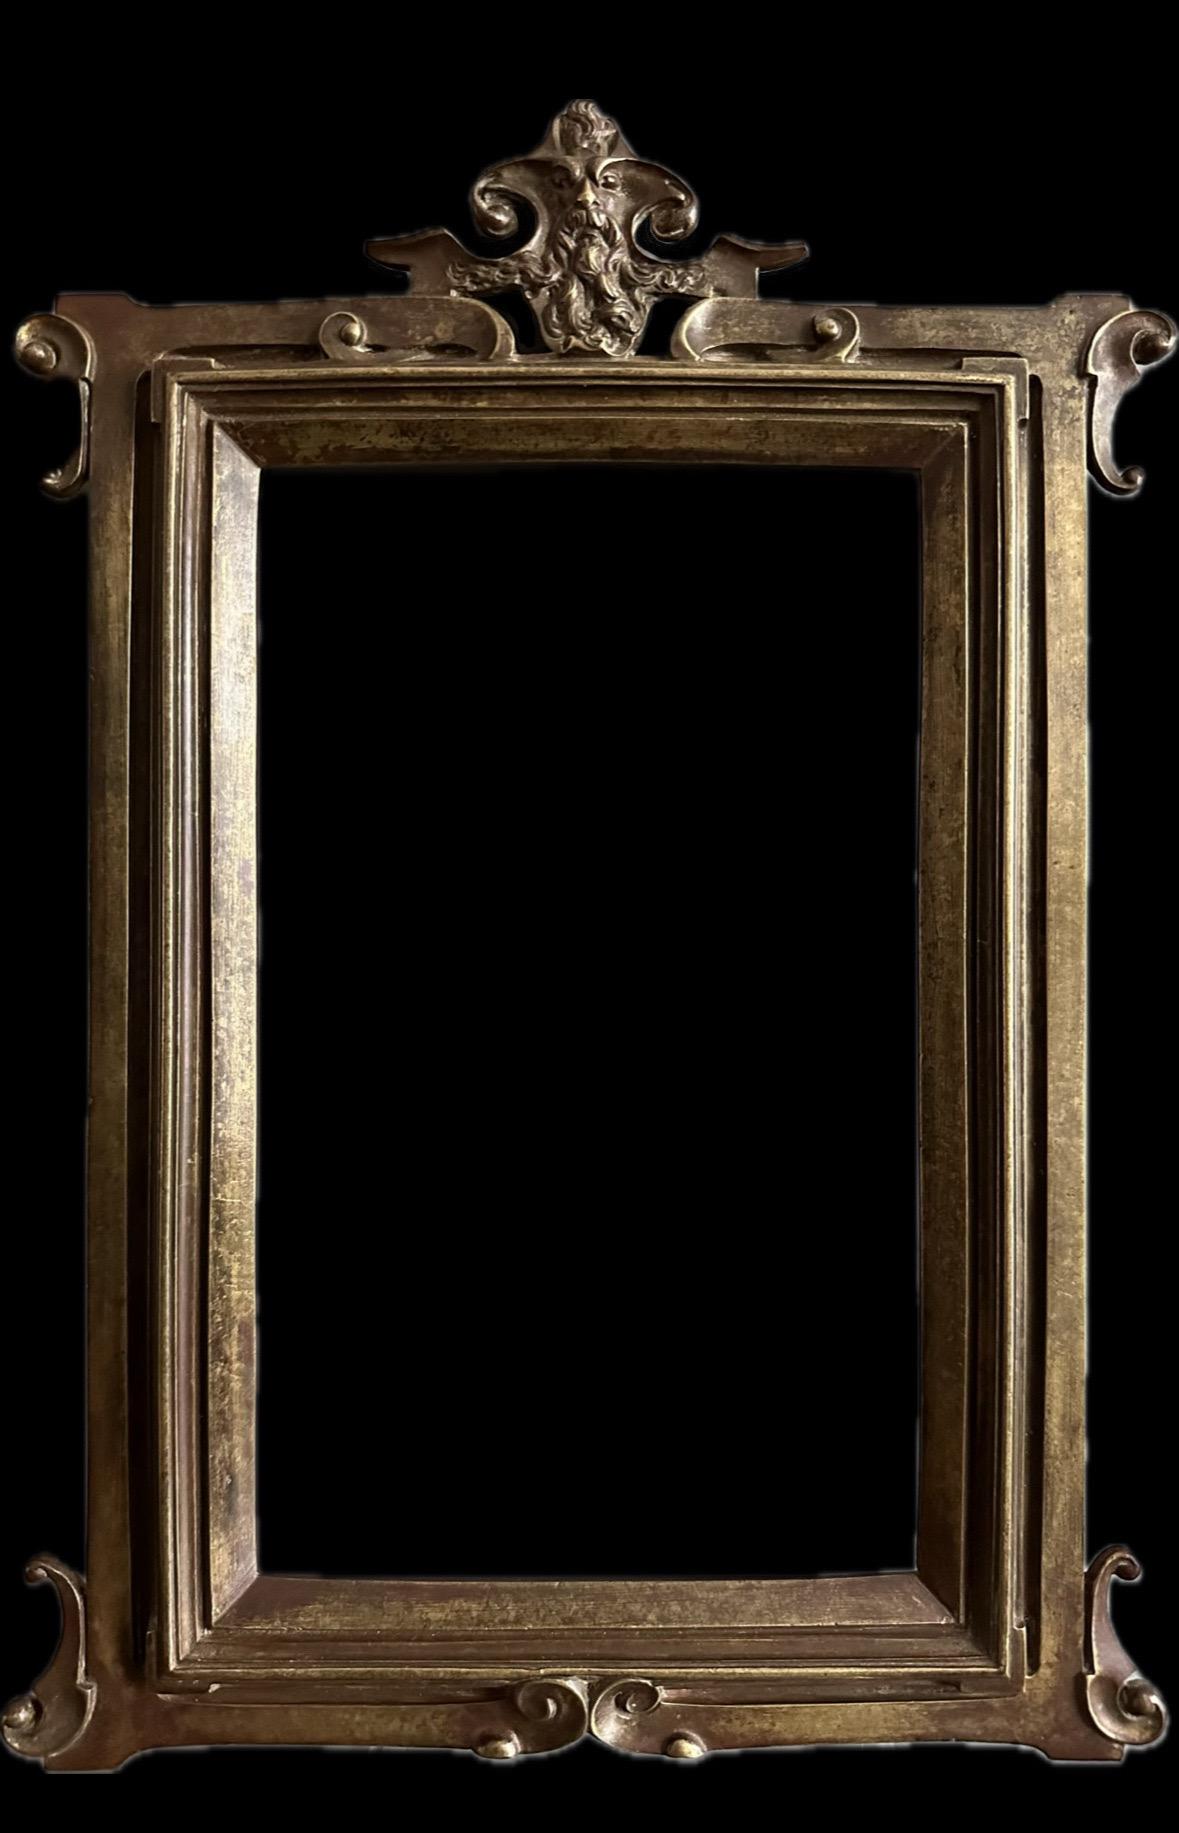 Vergoldeter und patinierter Rahmen aus Bronze. 
1890-1910 Jugendstil 
Giebelfigur des Silenus
Größe des Sichtfensters: 20 x 12 cm
Gesamtgröße: 30 x 21,2 cm